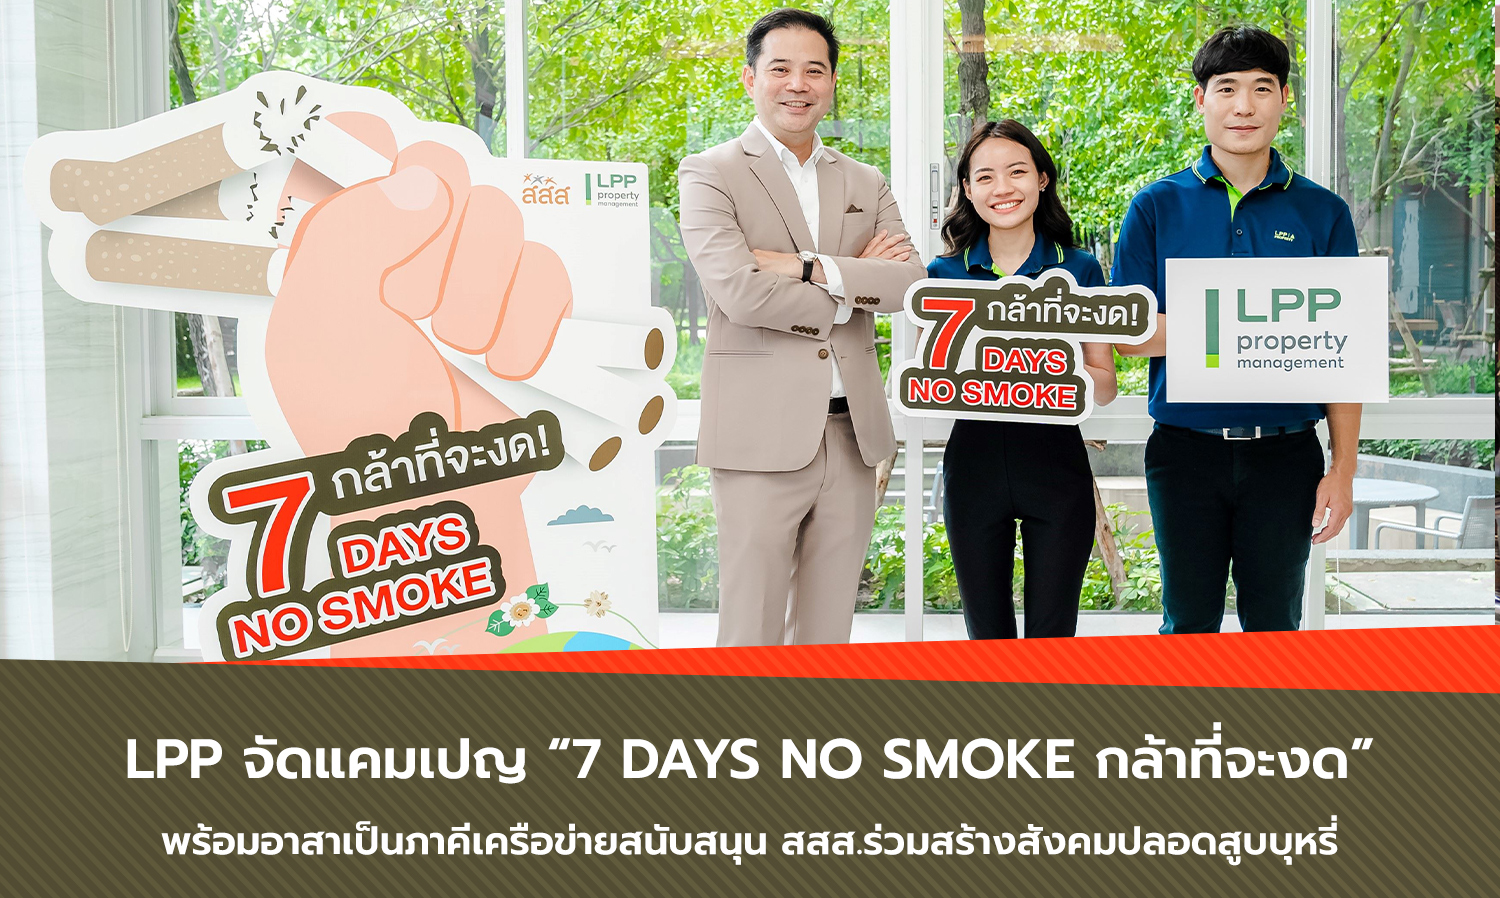 LPP จัดแคมเปญ 7 Days No Smoke กล้าที่จะงด พร้อมอาสาเป็นภาคีเครือข่ายสนับสนุน สสส.ร่วมสร้างสังคมปลอดสูบบุหรี่